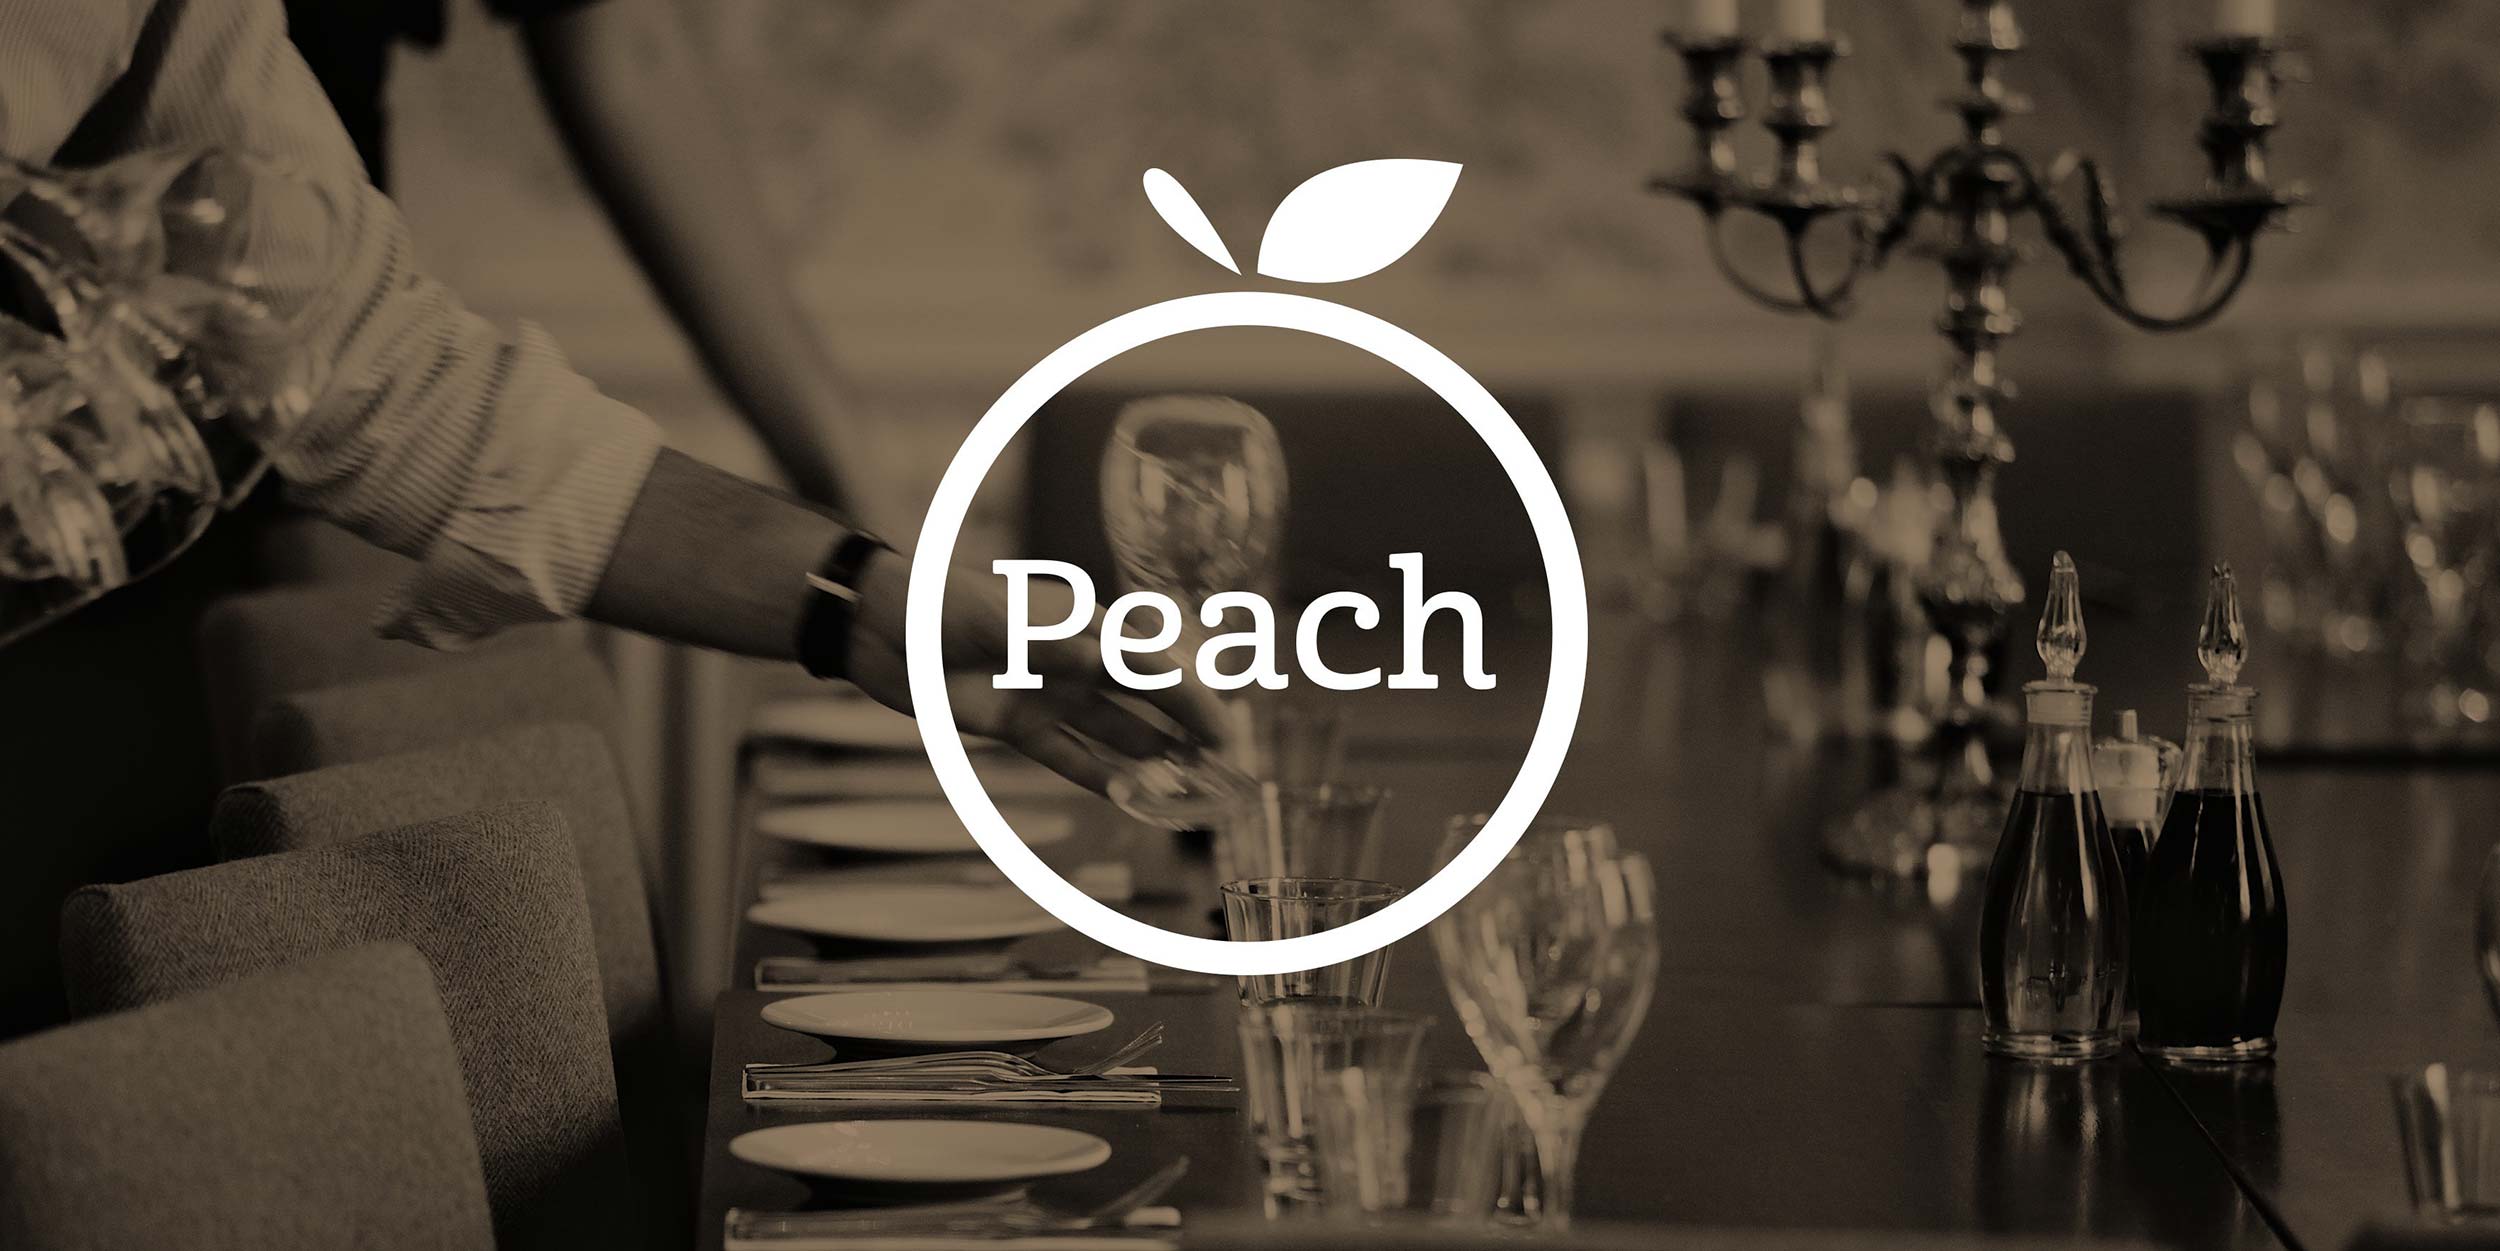 Design work for The Peach Pub Company